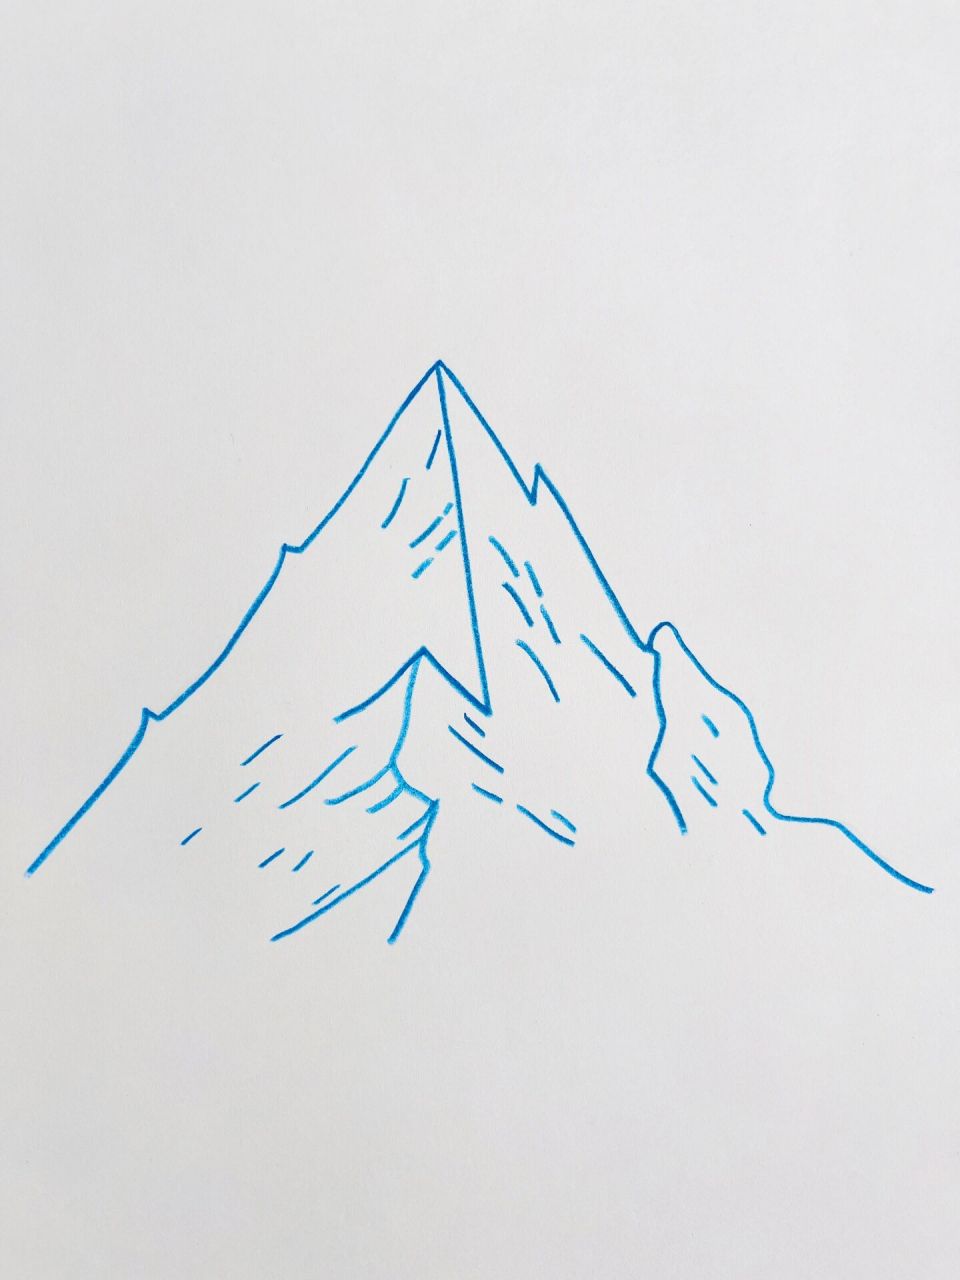 雪山画简单图片